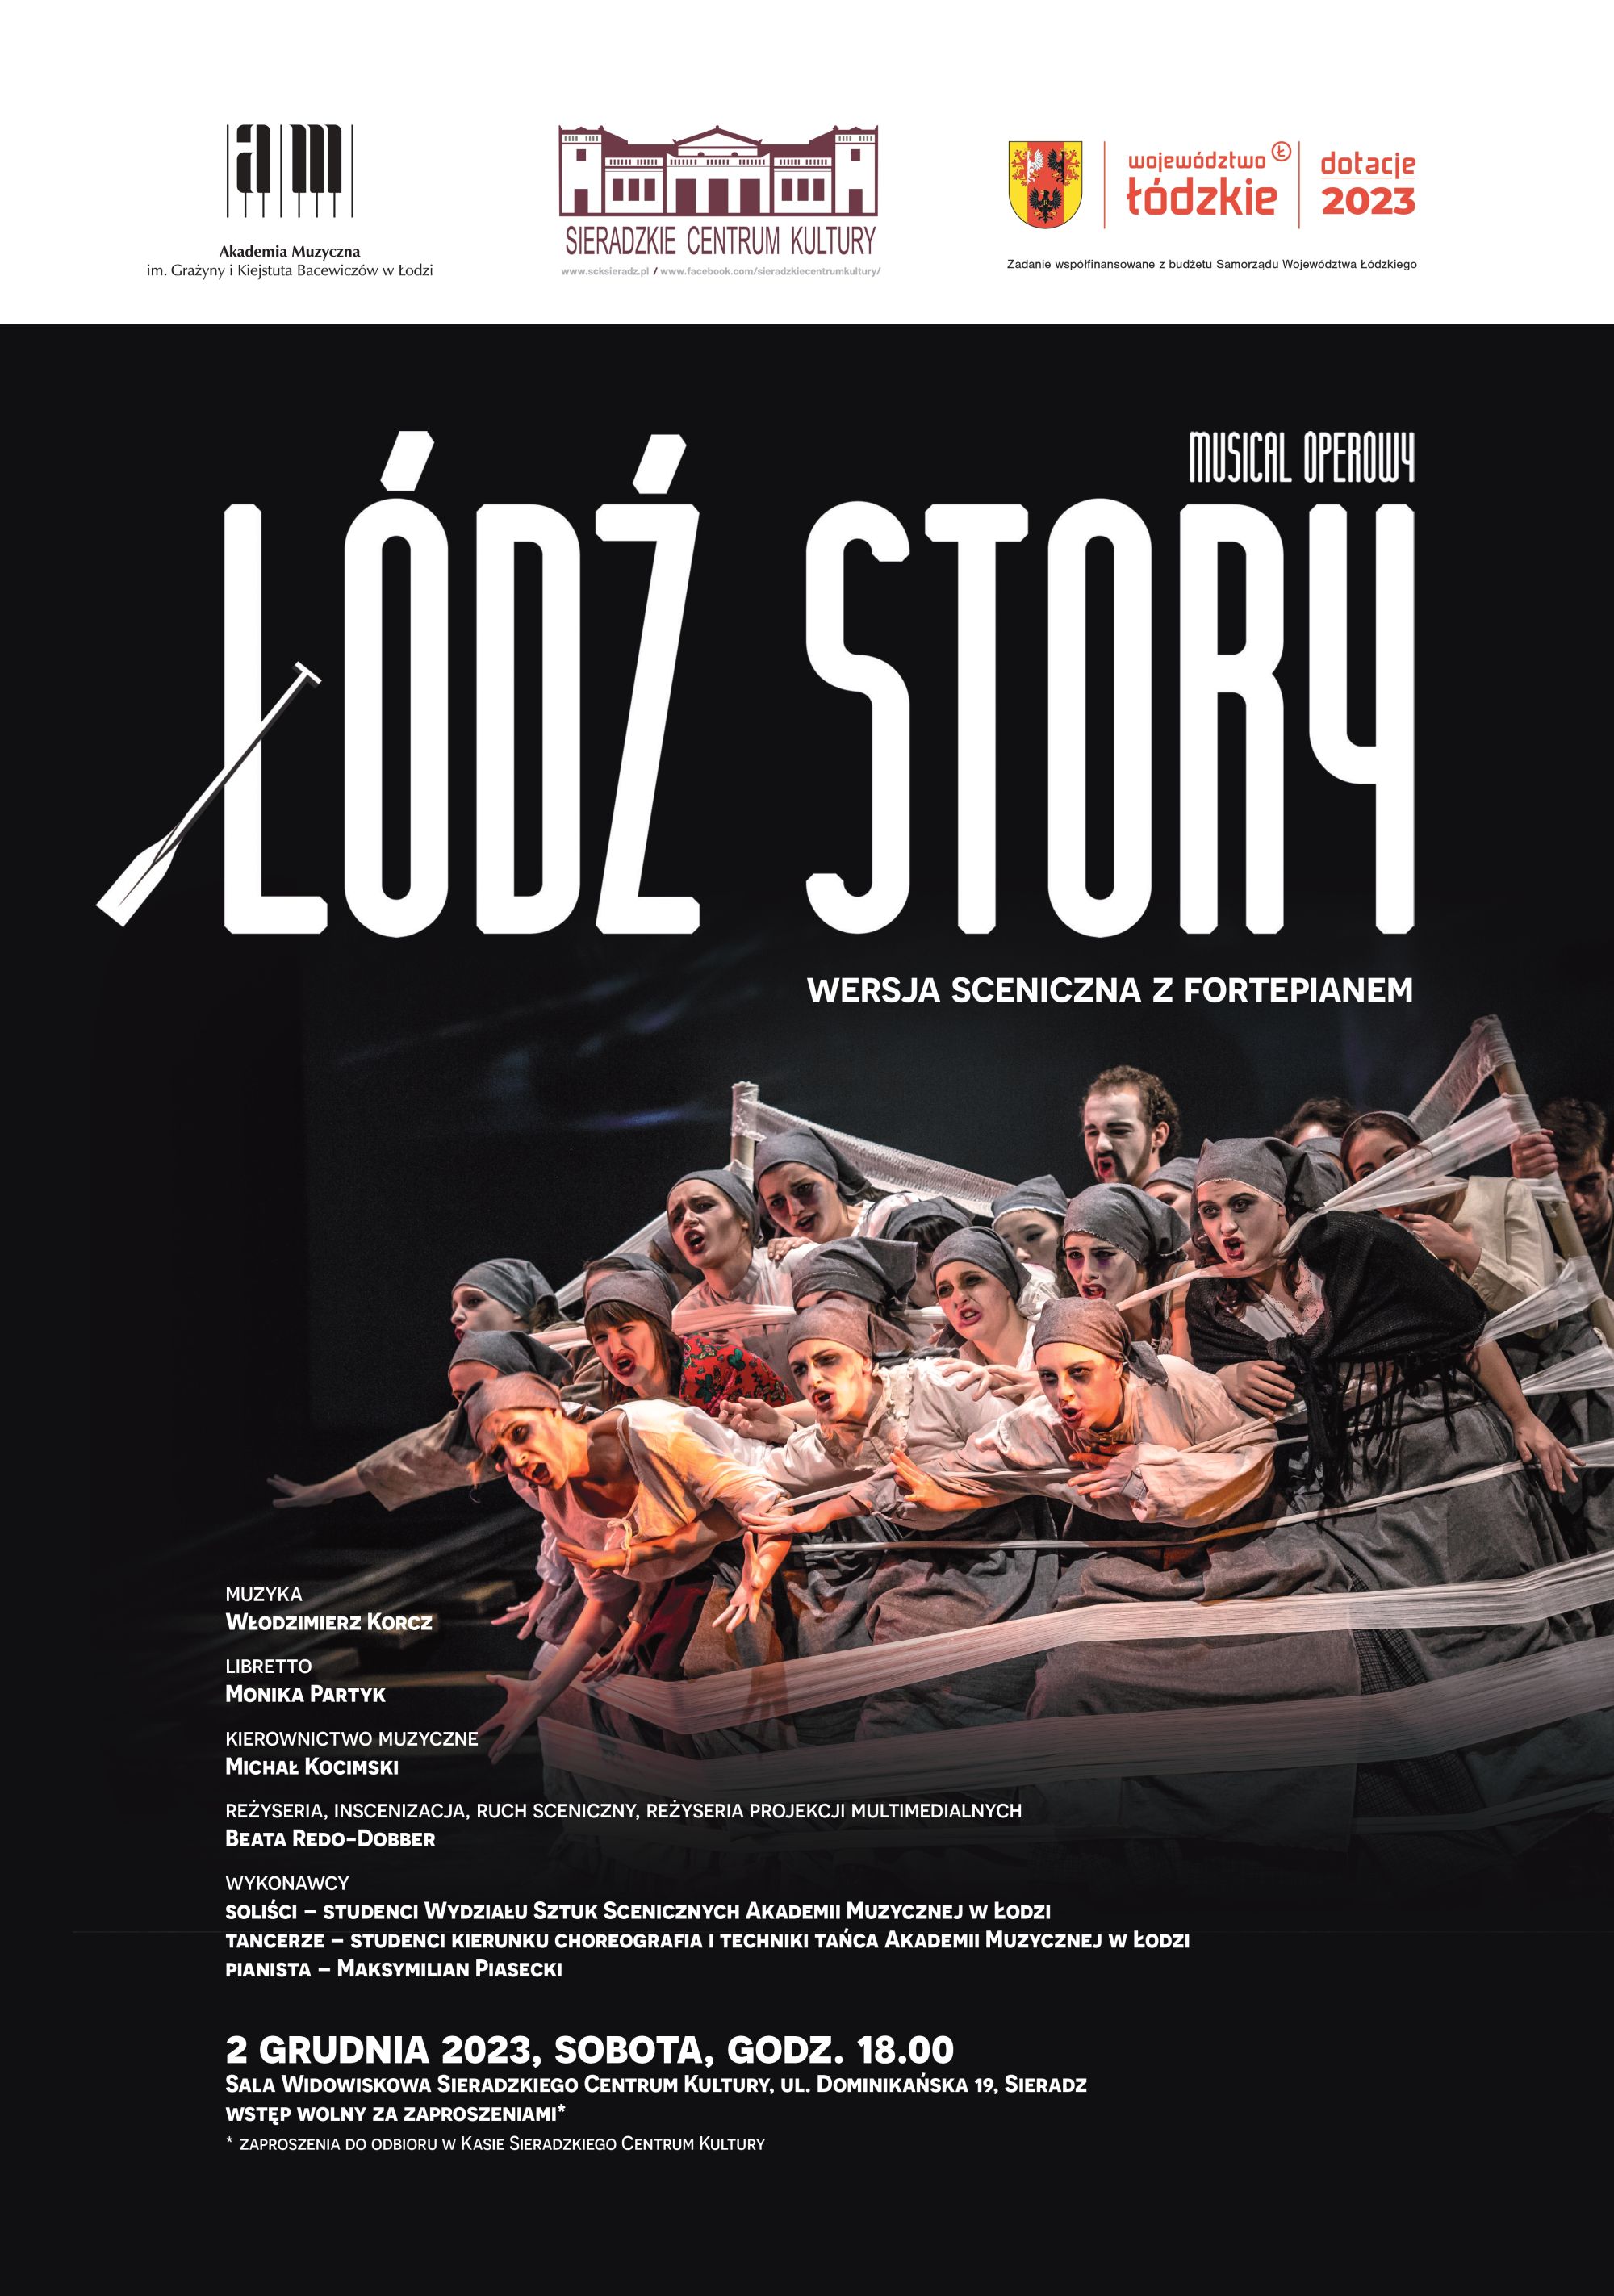 Plakat spektaklu Łódź Story. Widnieje na nim chór przebrany za robotników i wypisane są dane odnośnie wydarzenia